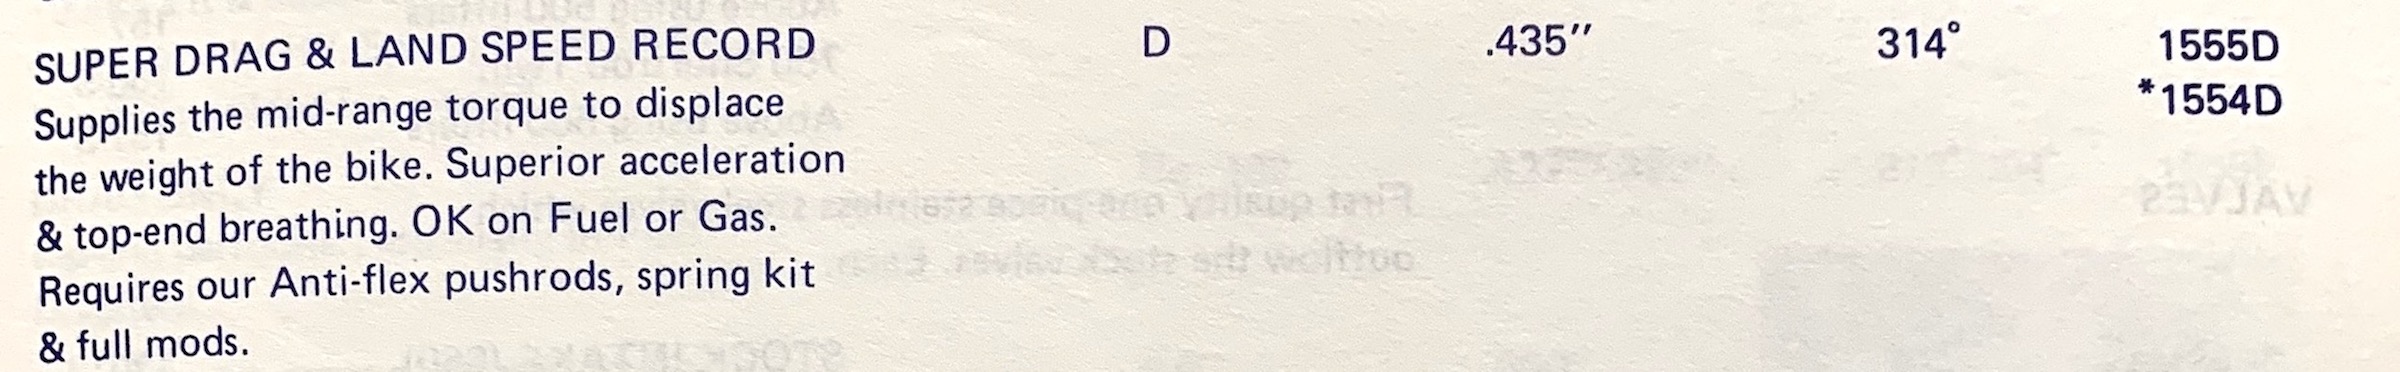 NORRIS 'D' GRIND CAM DATA copy.JPG